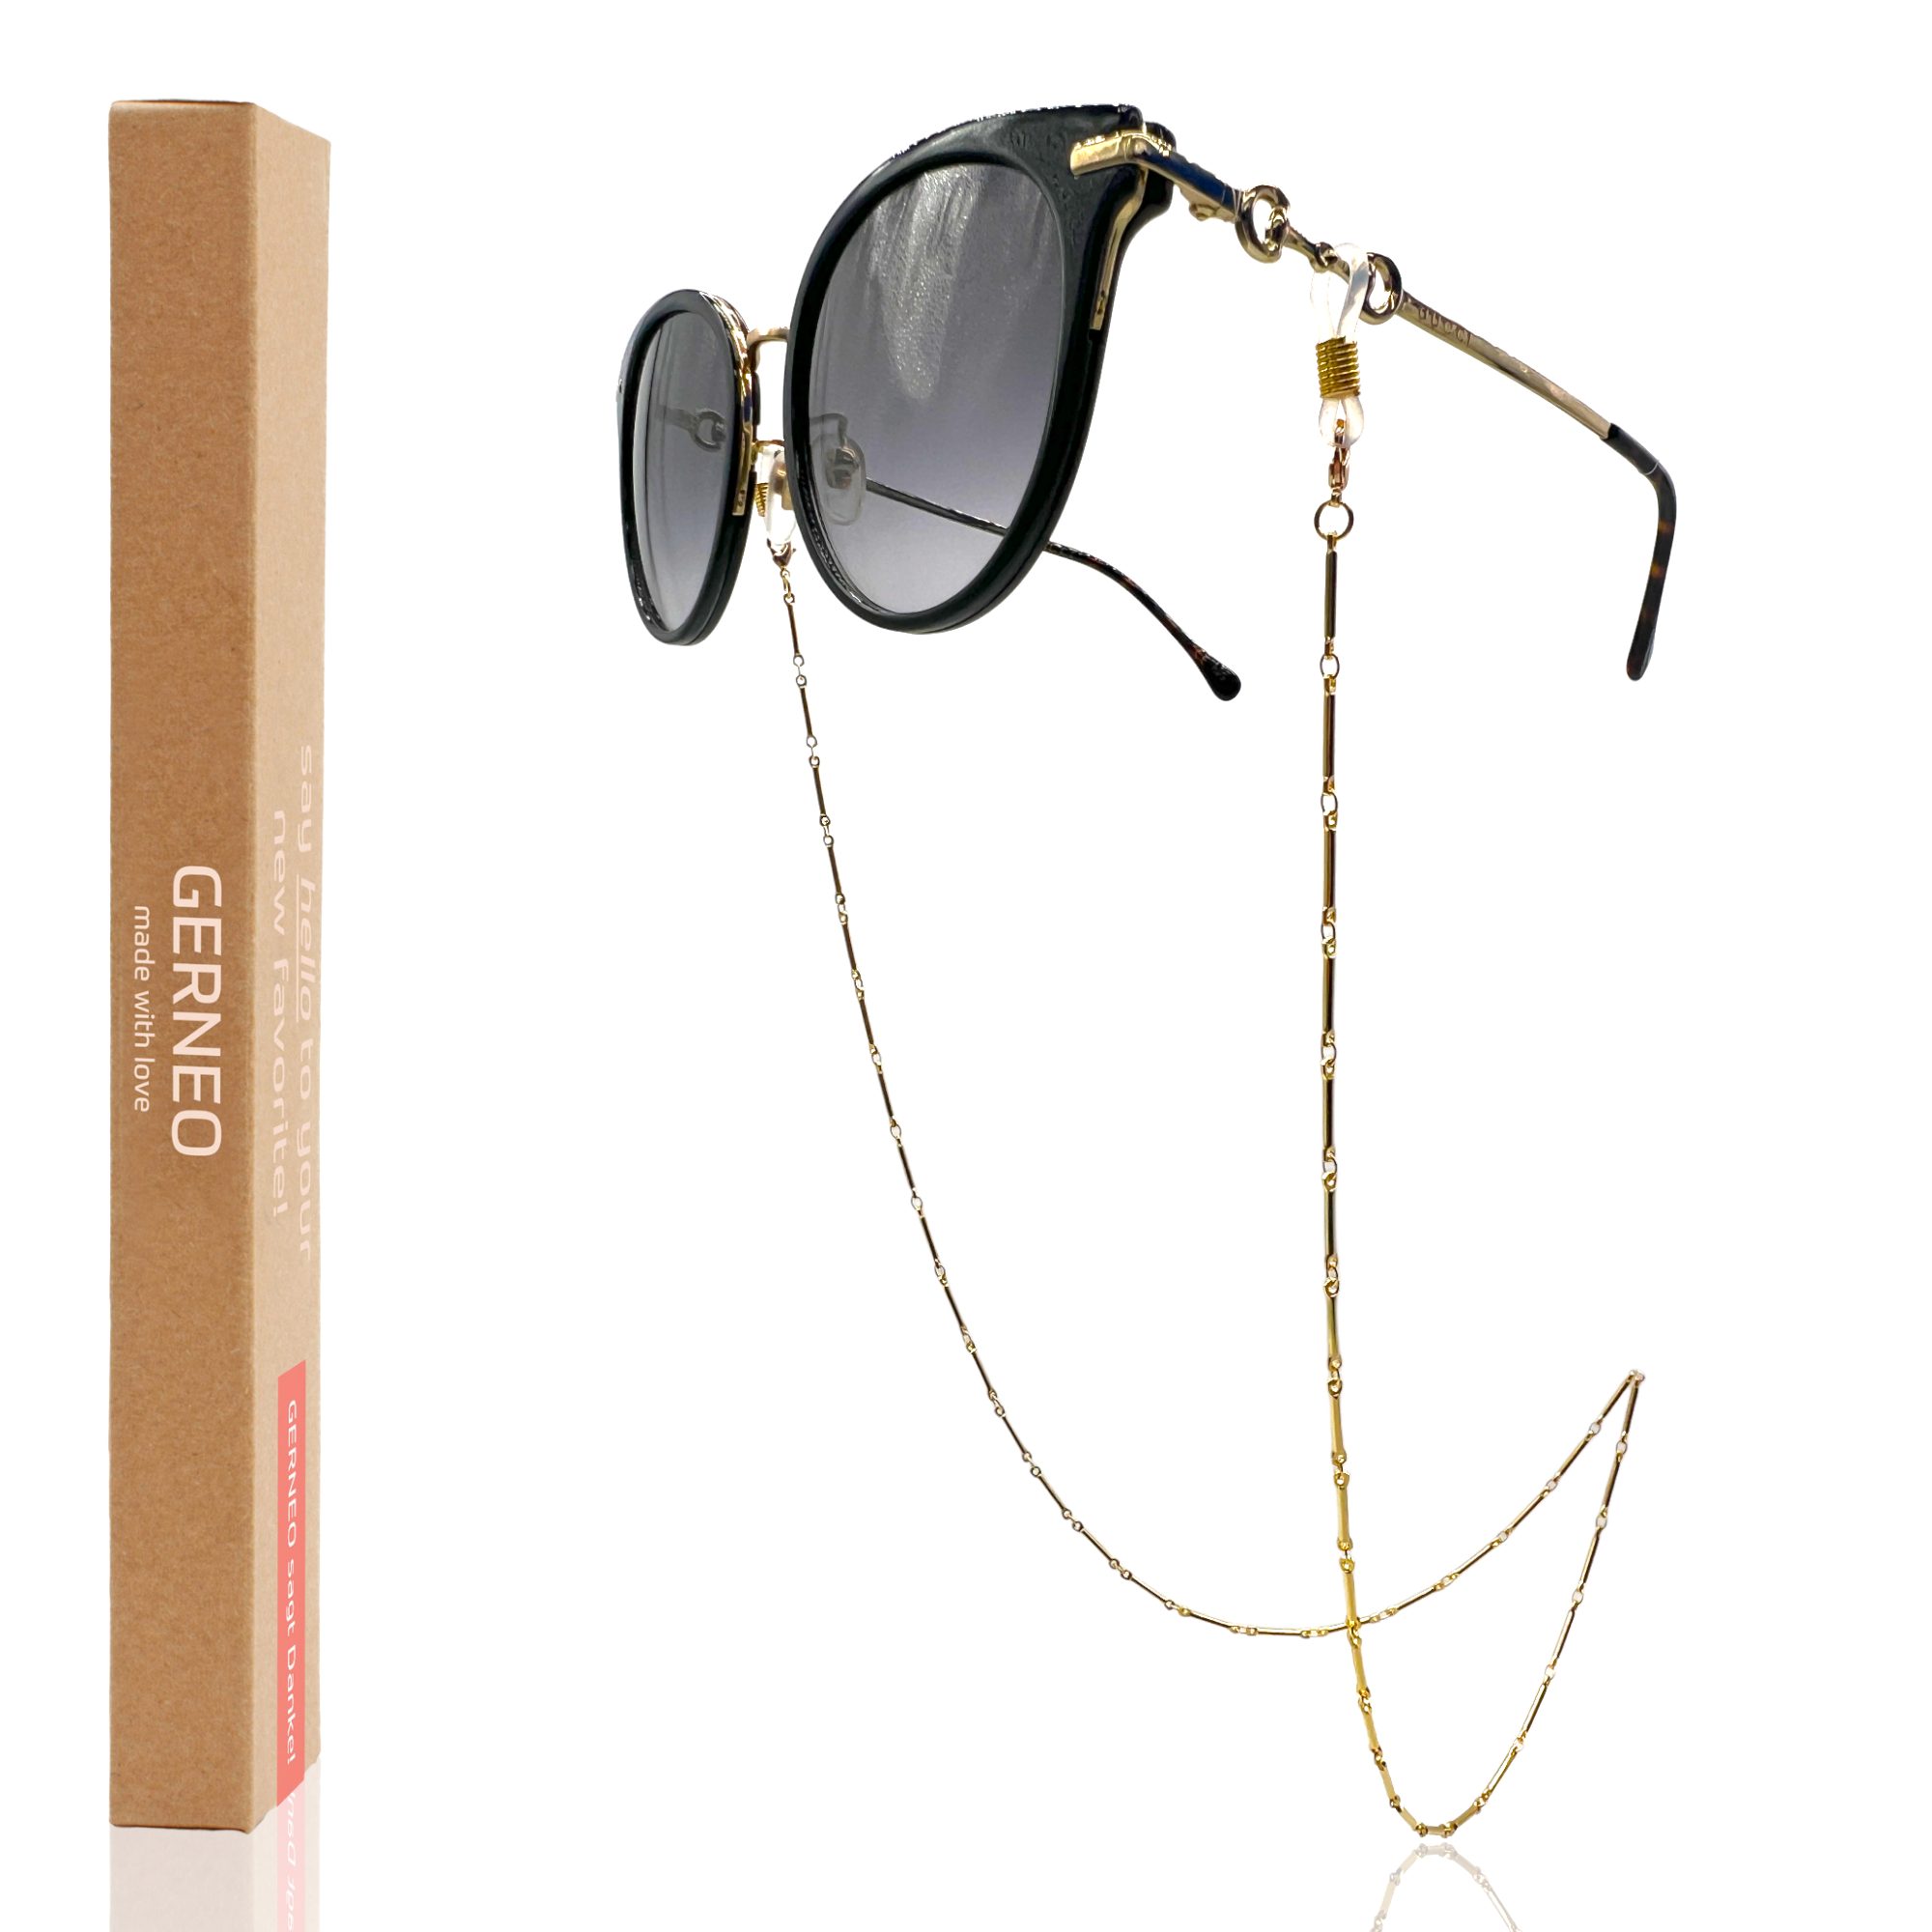 GERNEO Brillenkette GERNEO® – Phuket – korrosionsbeständige Brillenkette & Maskenhalter, vergoldet oder versilbert – einzigartig hochwertige Brillenkette